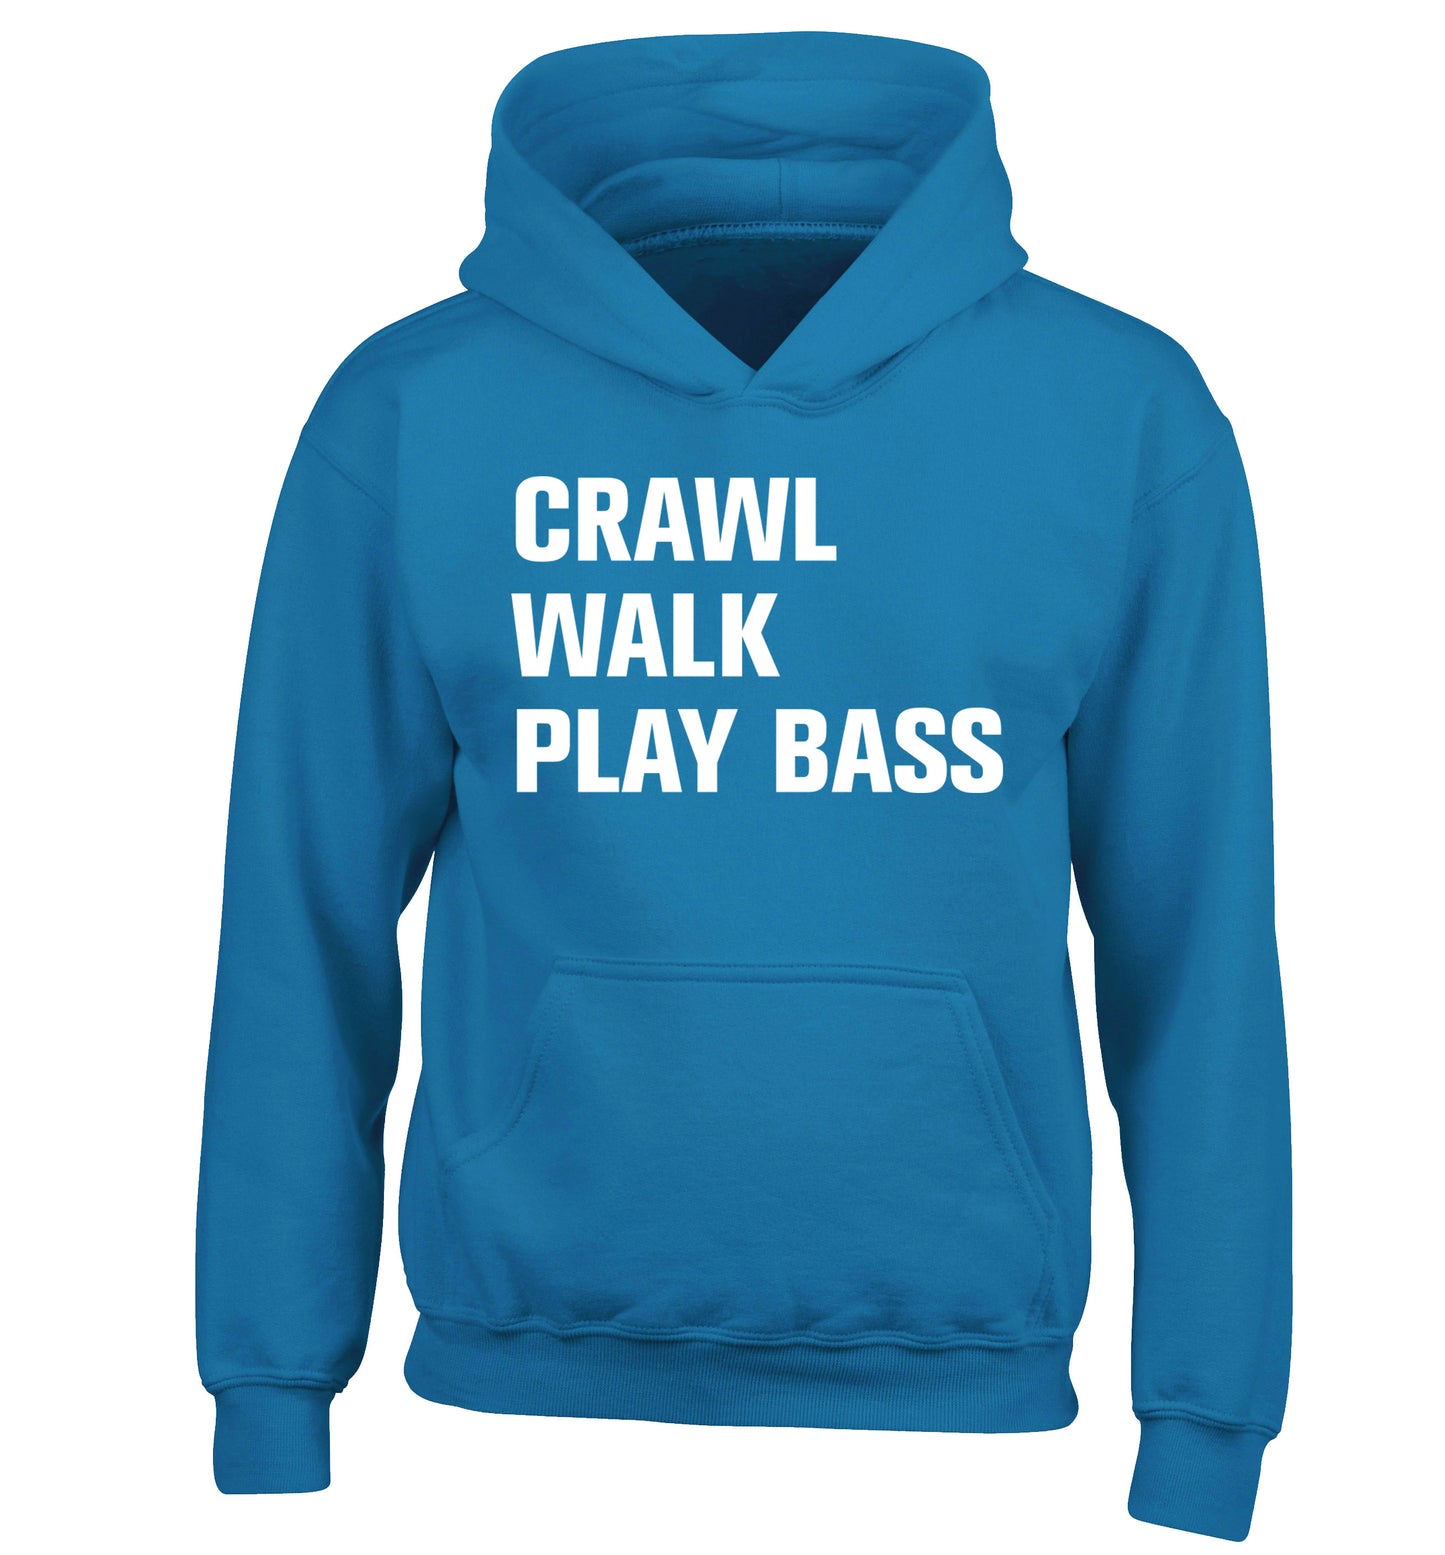 Crawl Walk Play Bass children's blue hoodie 12-13 Years